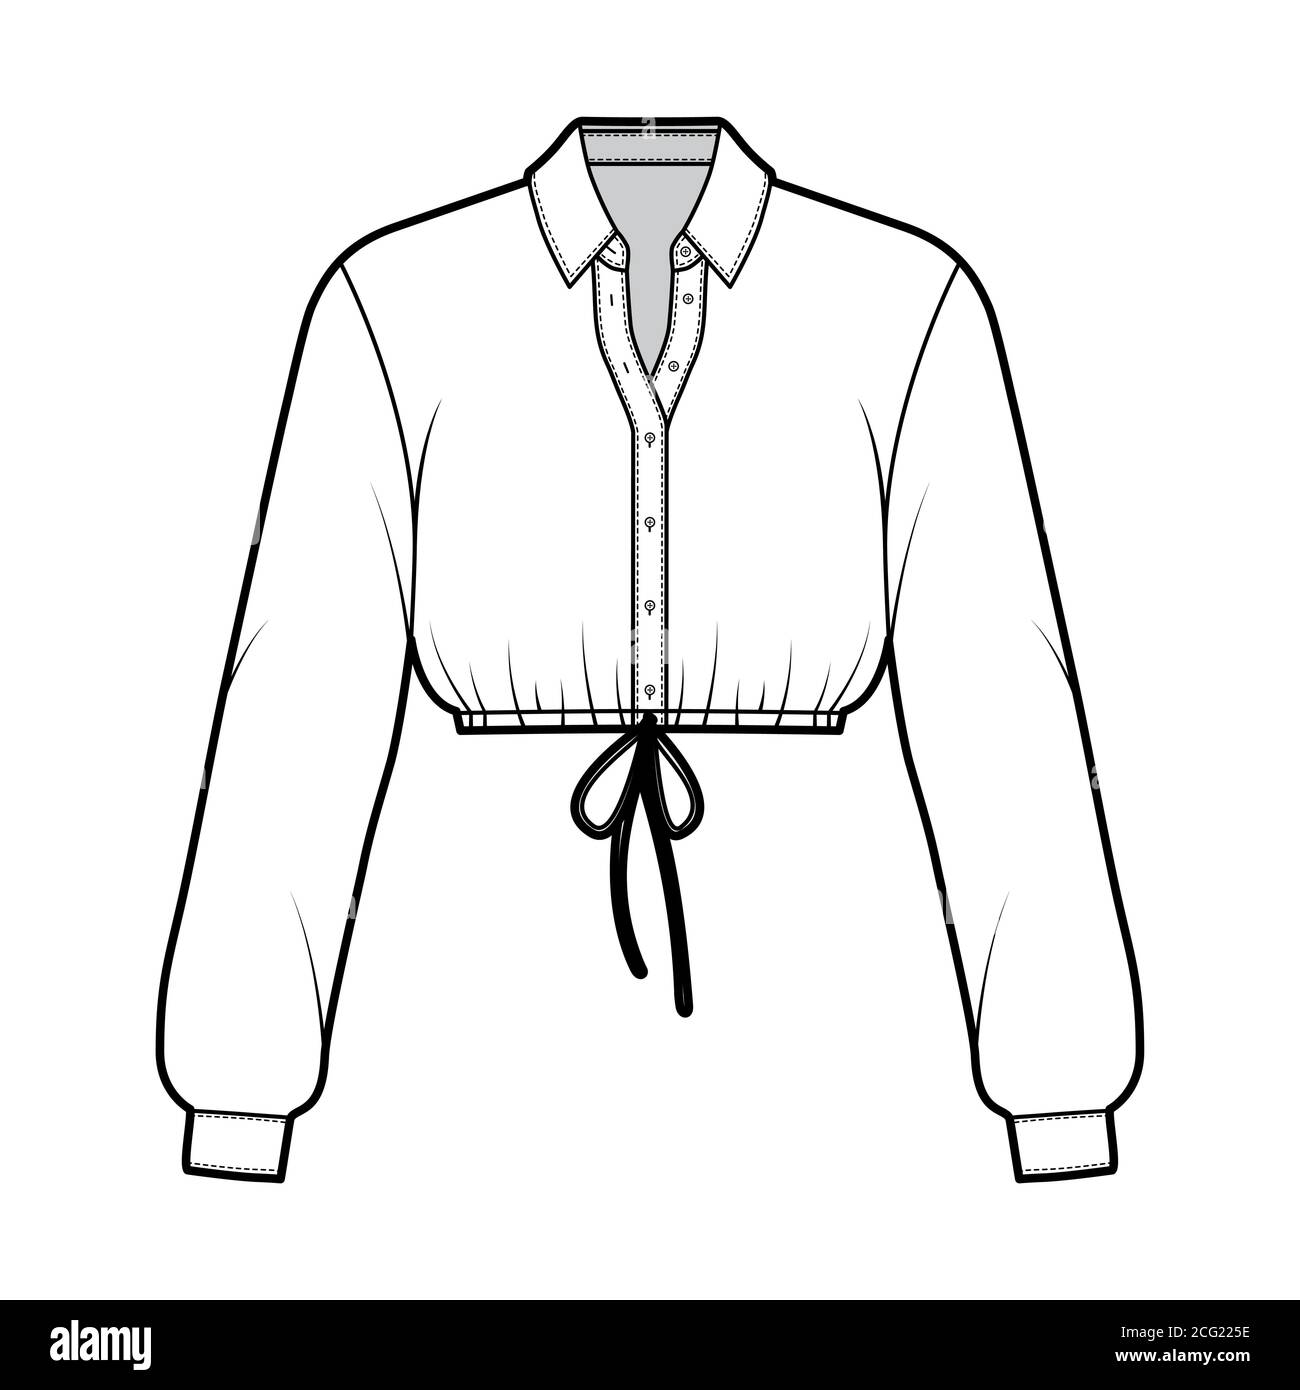 Chemise courte de mode technique avec col de base, manches longues, ourlet  avec cordon, fermeture à boutons sur le devant. Modèle de blouse de  vêtements plats sur le devant, couleur blanche. Femmes